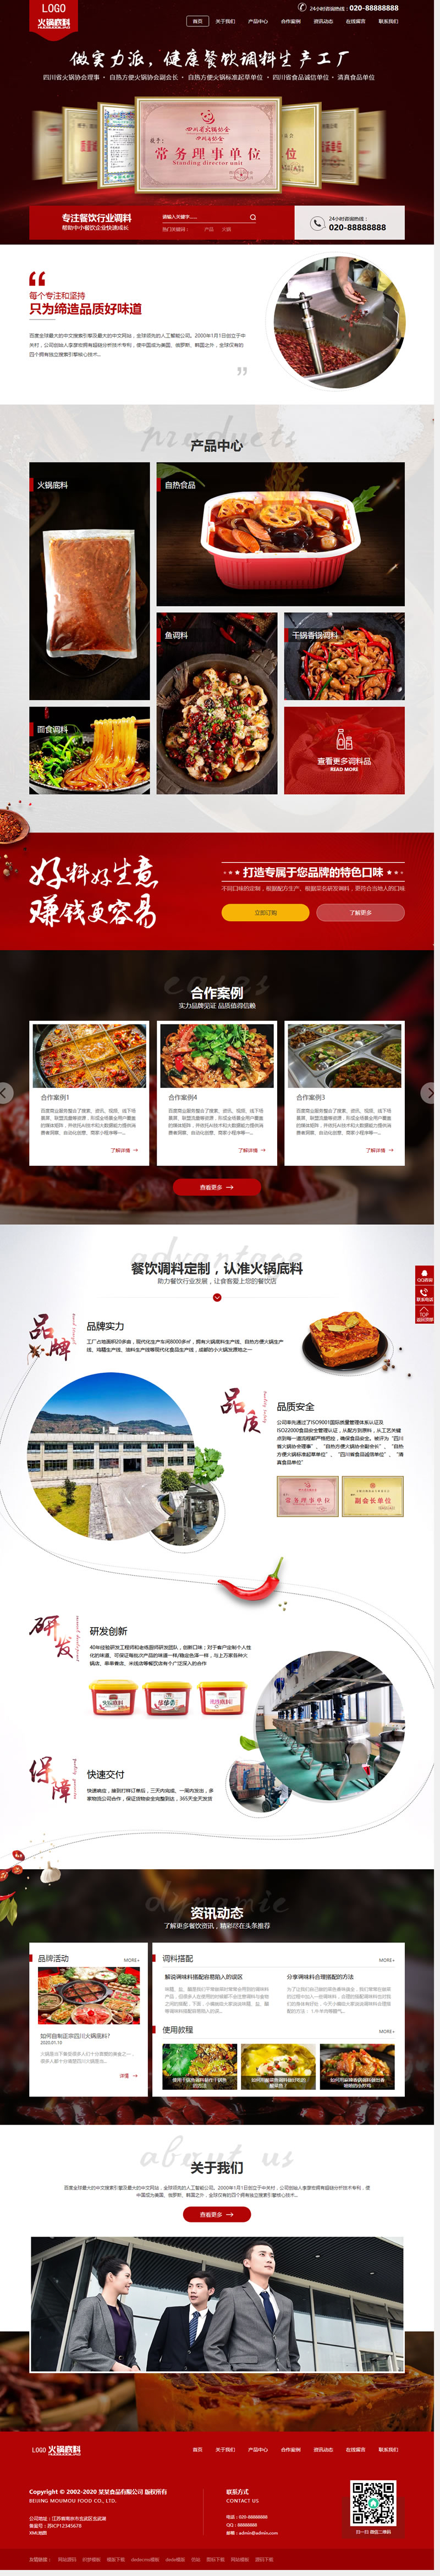 C213 织梦dedecms高端营销型火锅底料餐饮调料食品公司网站模板(带手机移动端)